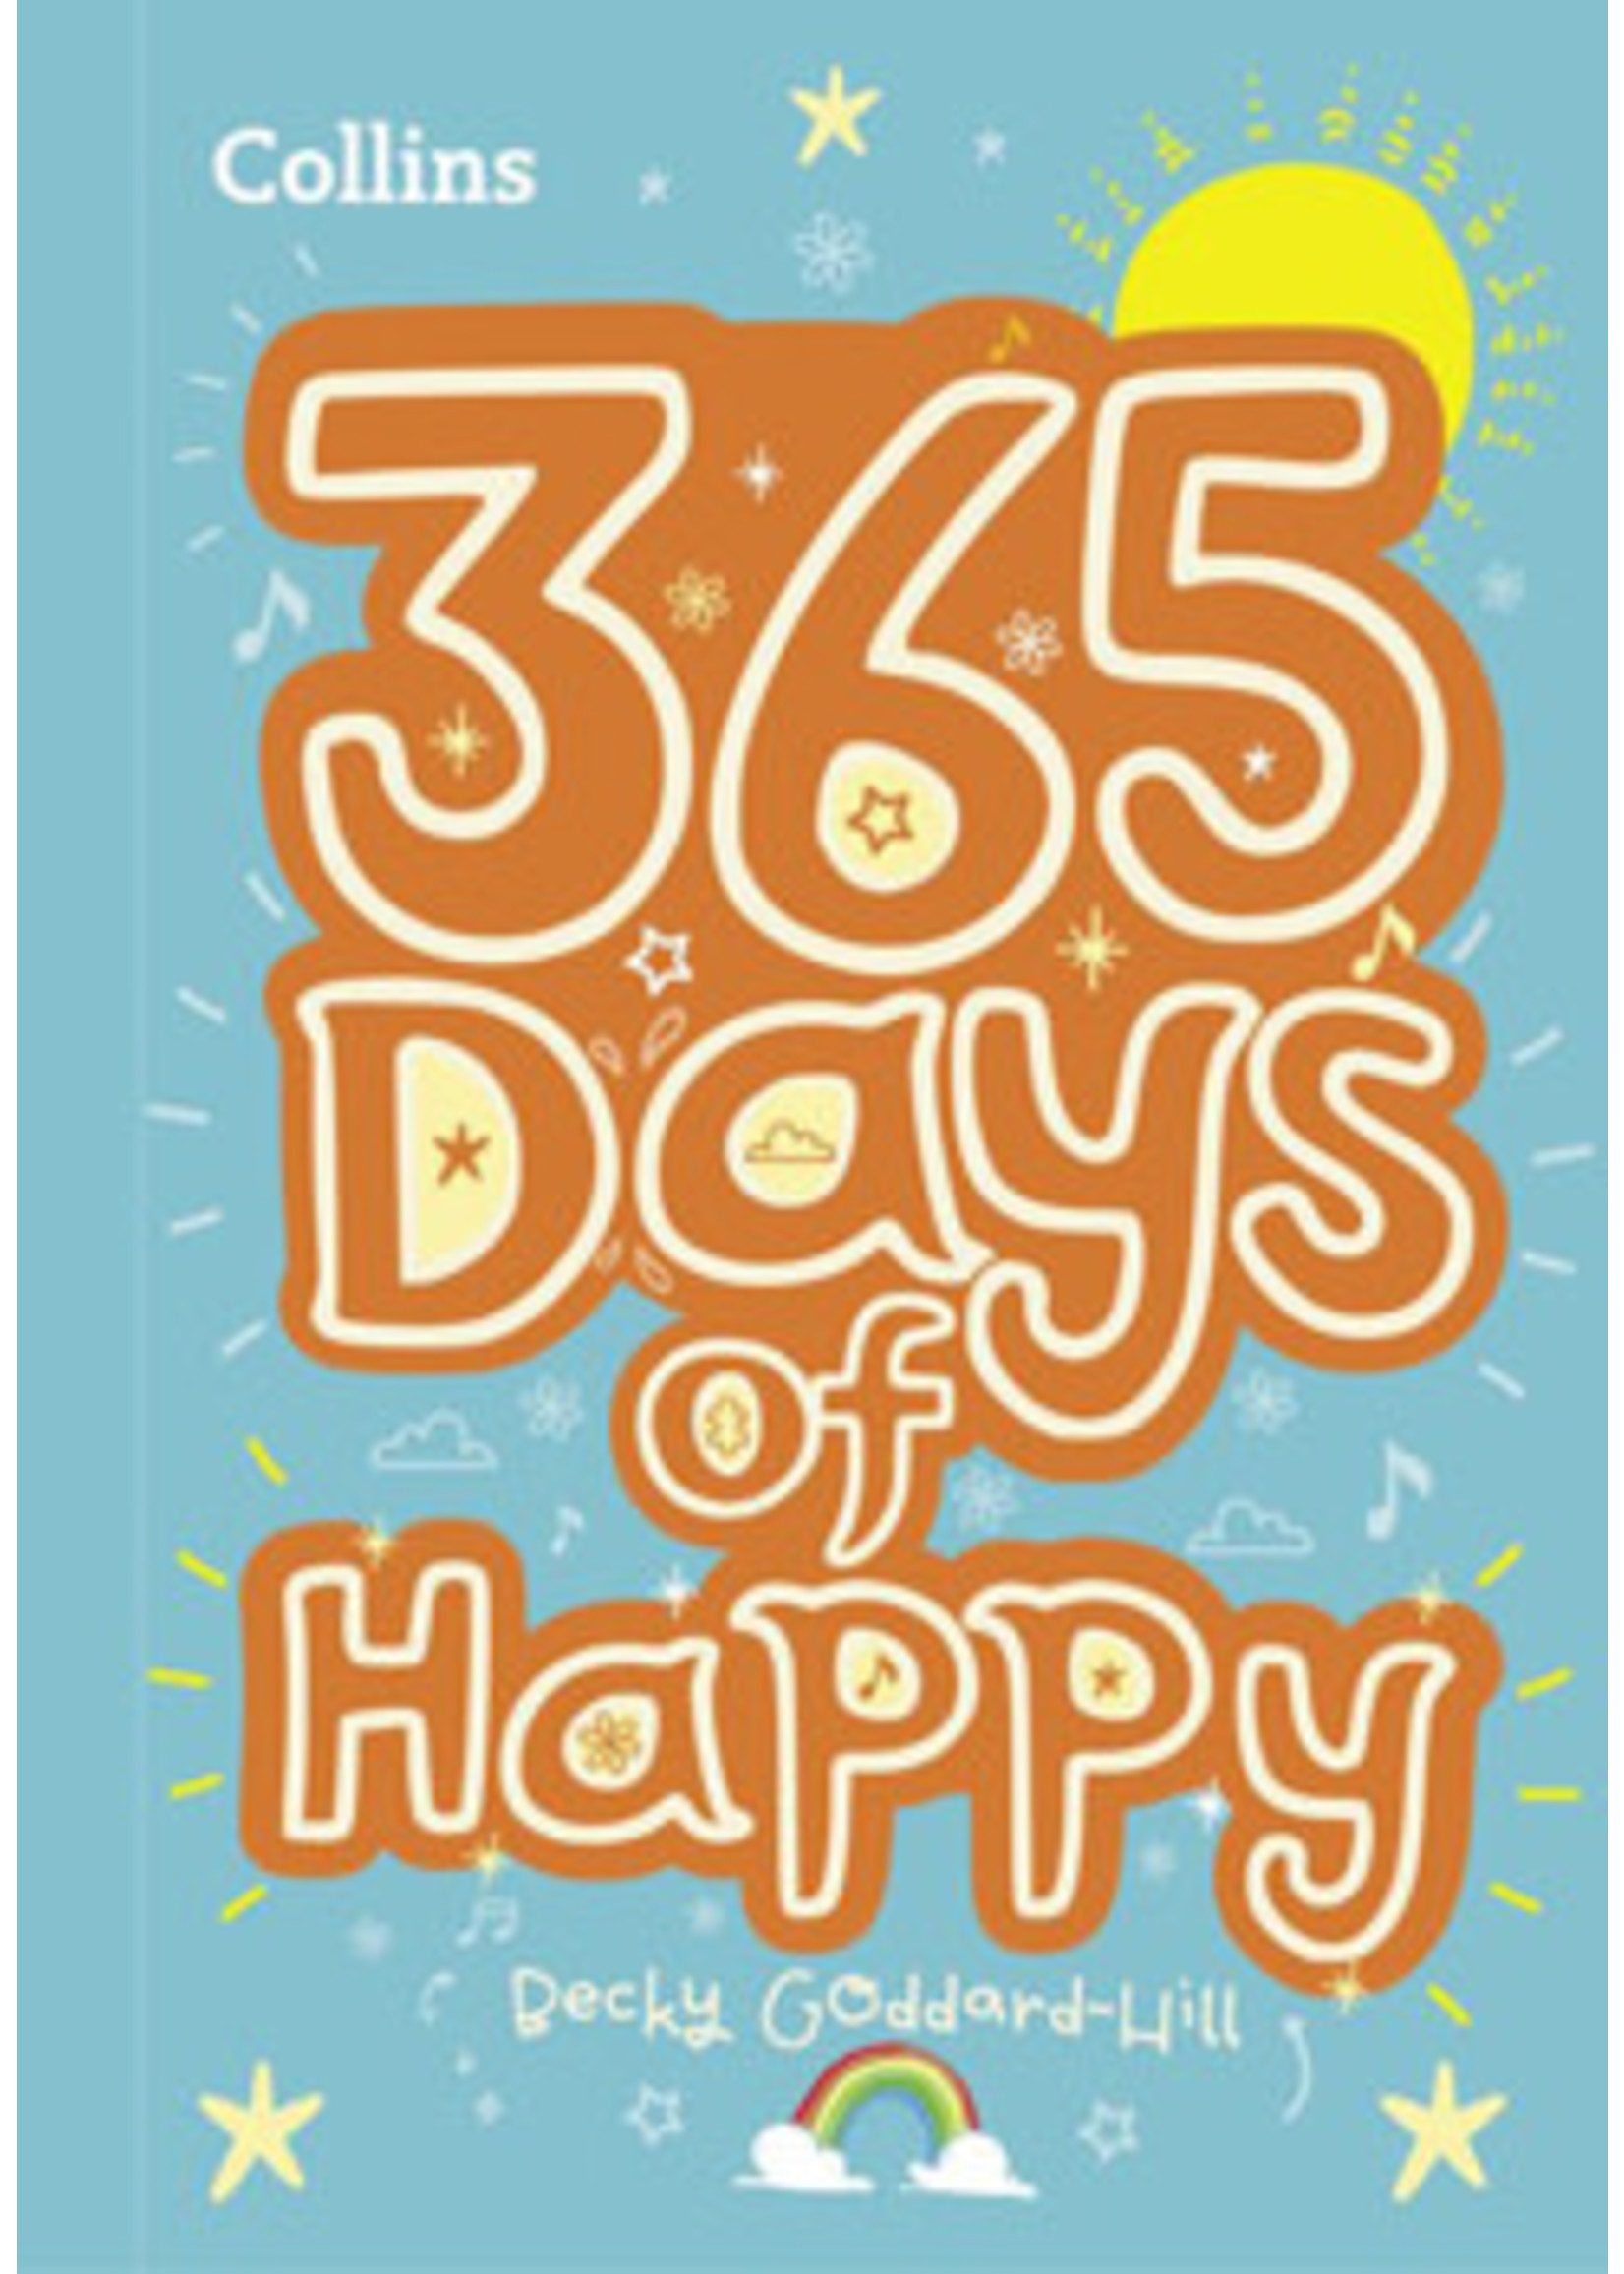 365 Days Of Happy